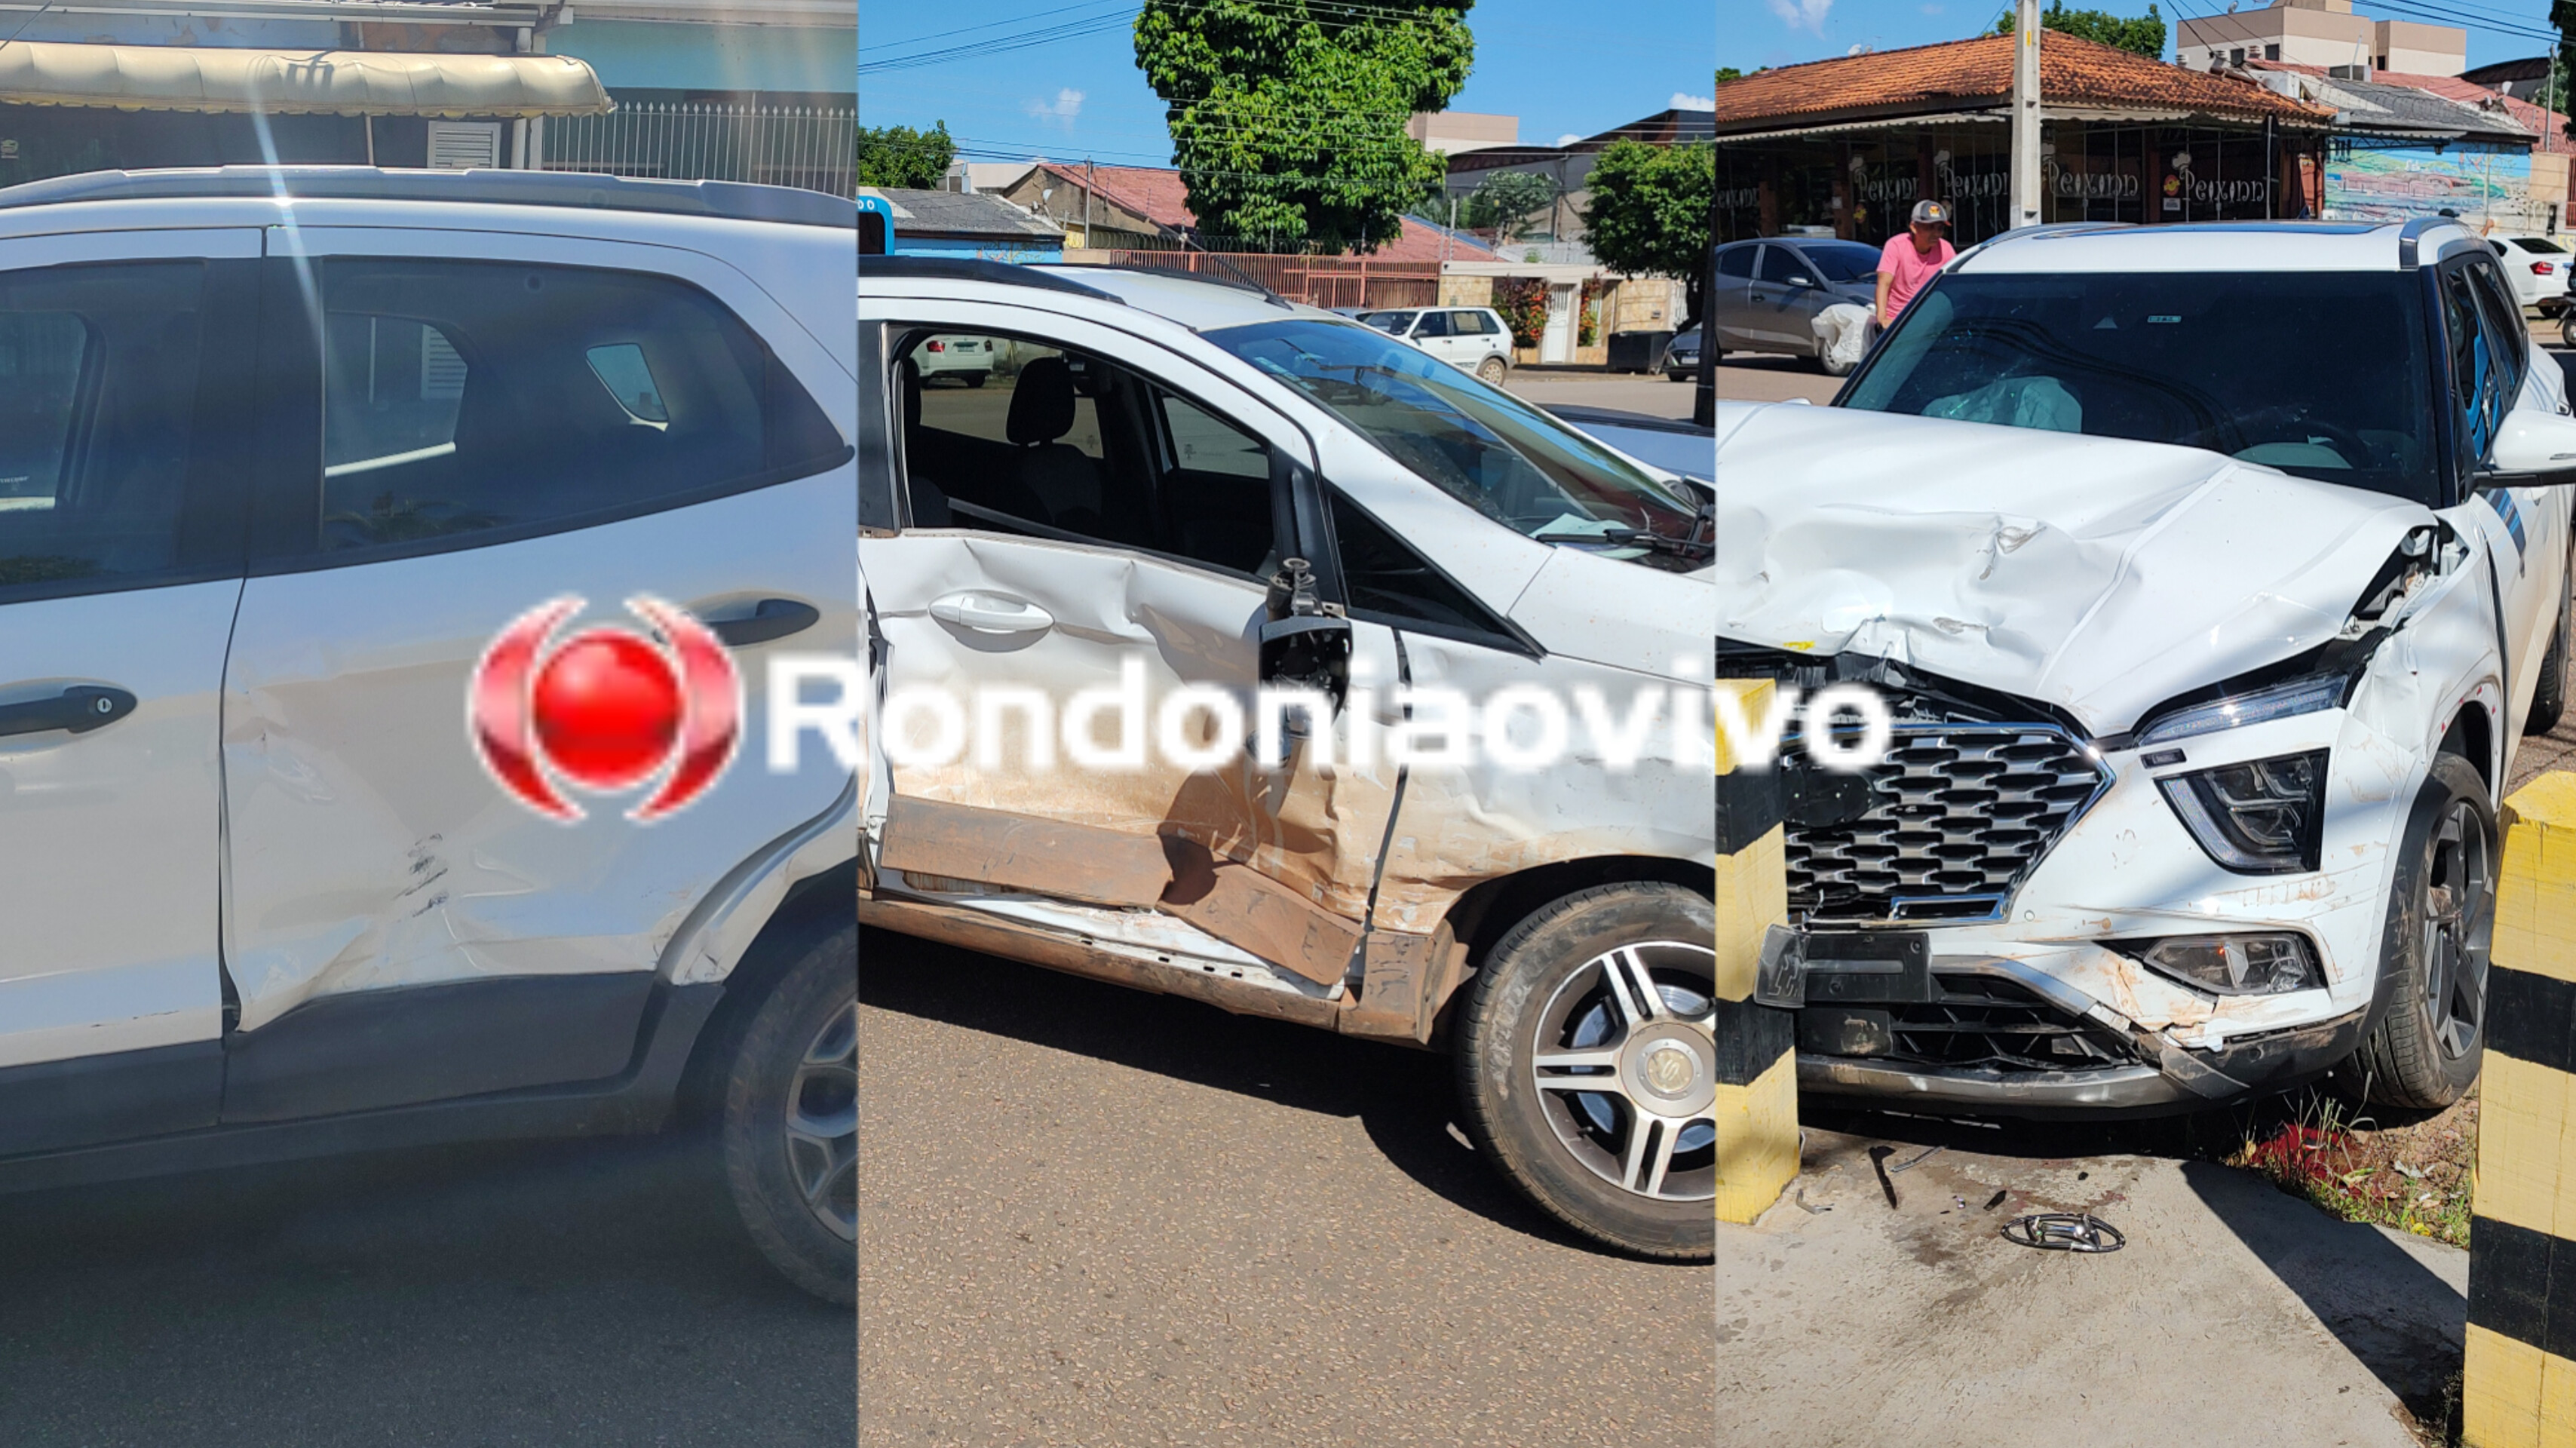 VÍDEO: Grave colisão envolve três carros na Avenida Calama